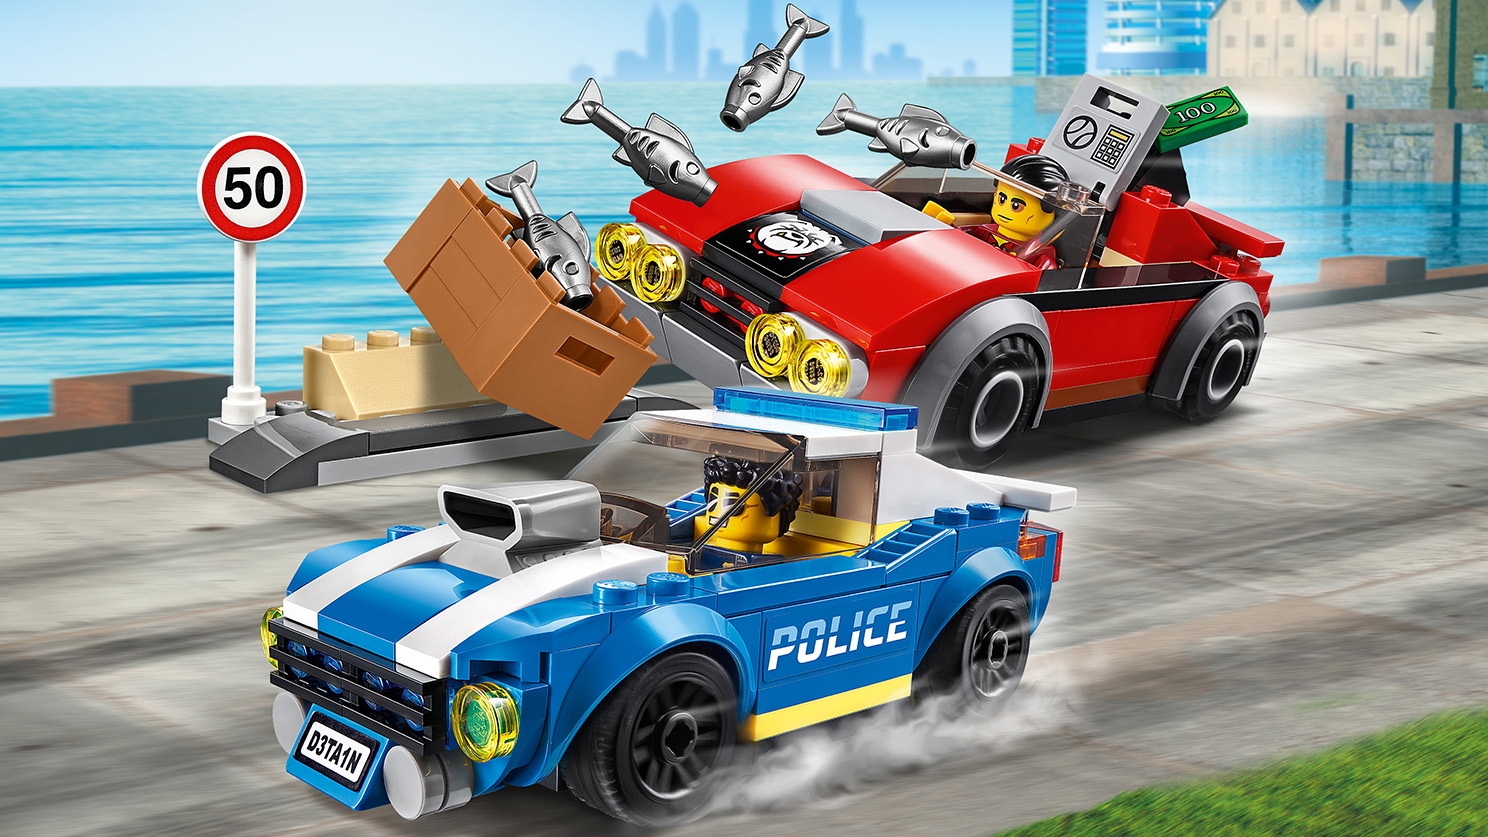 Highway Arrest 60242 - City - LEGO.com for